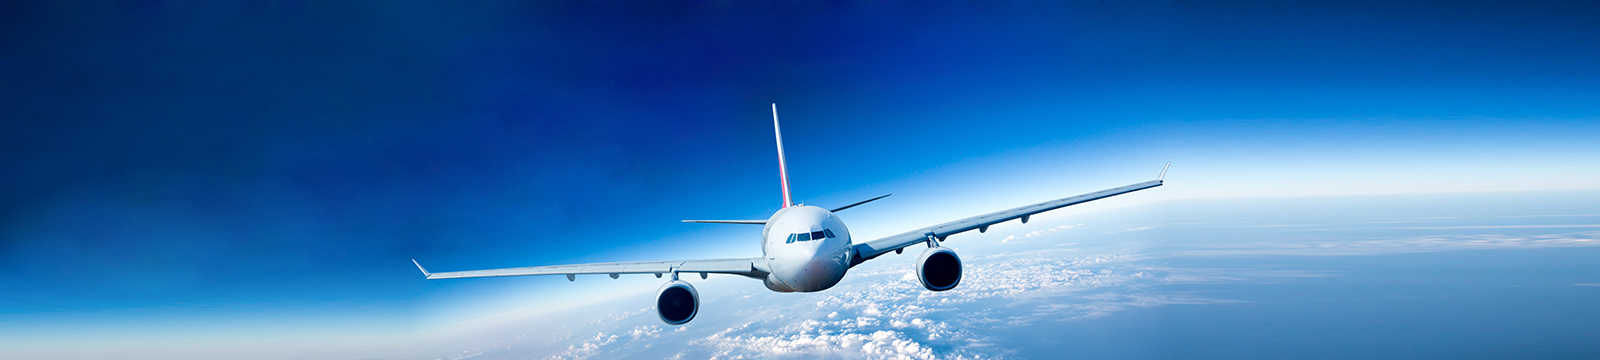 祥鹏航空货运公司依托萧山国际机场的良好信誉及舱位管理能力，为您办理航空急件、普件或快件运输，最合理航空货运价格实现您的需求。